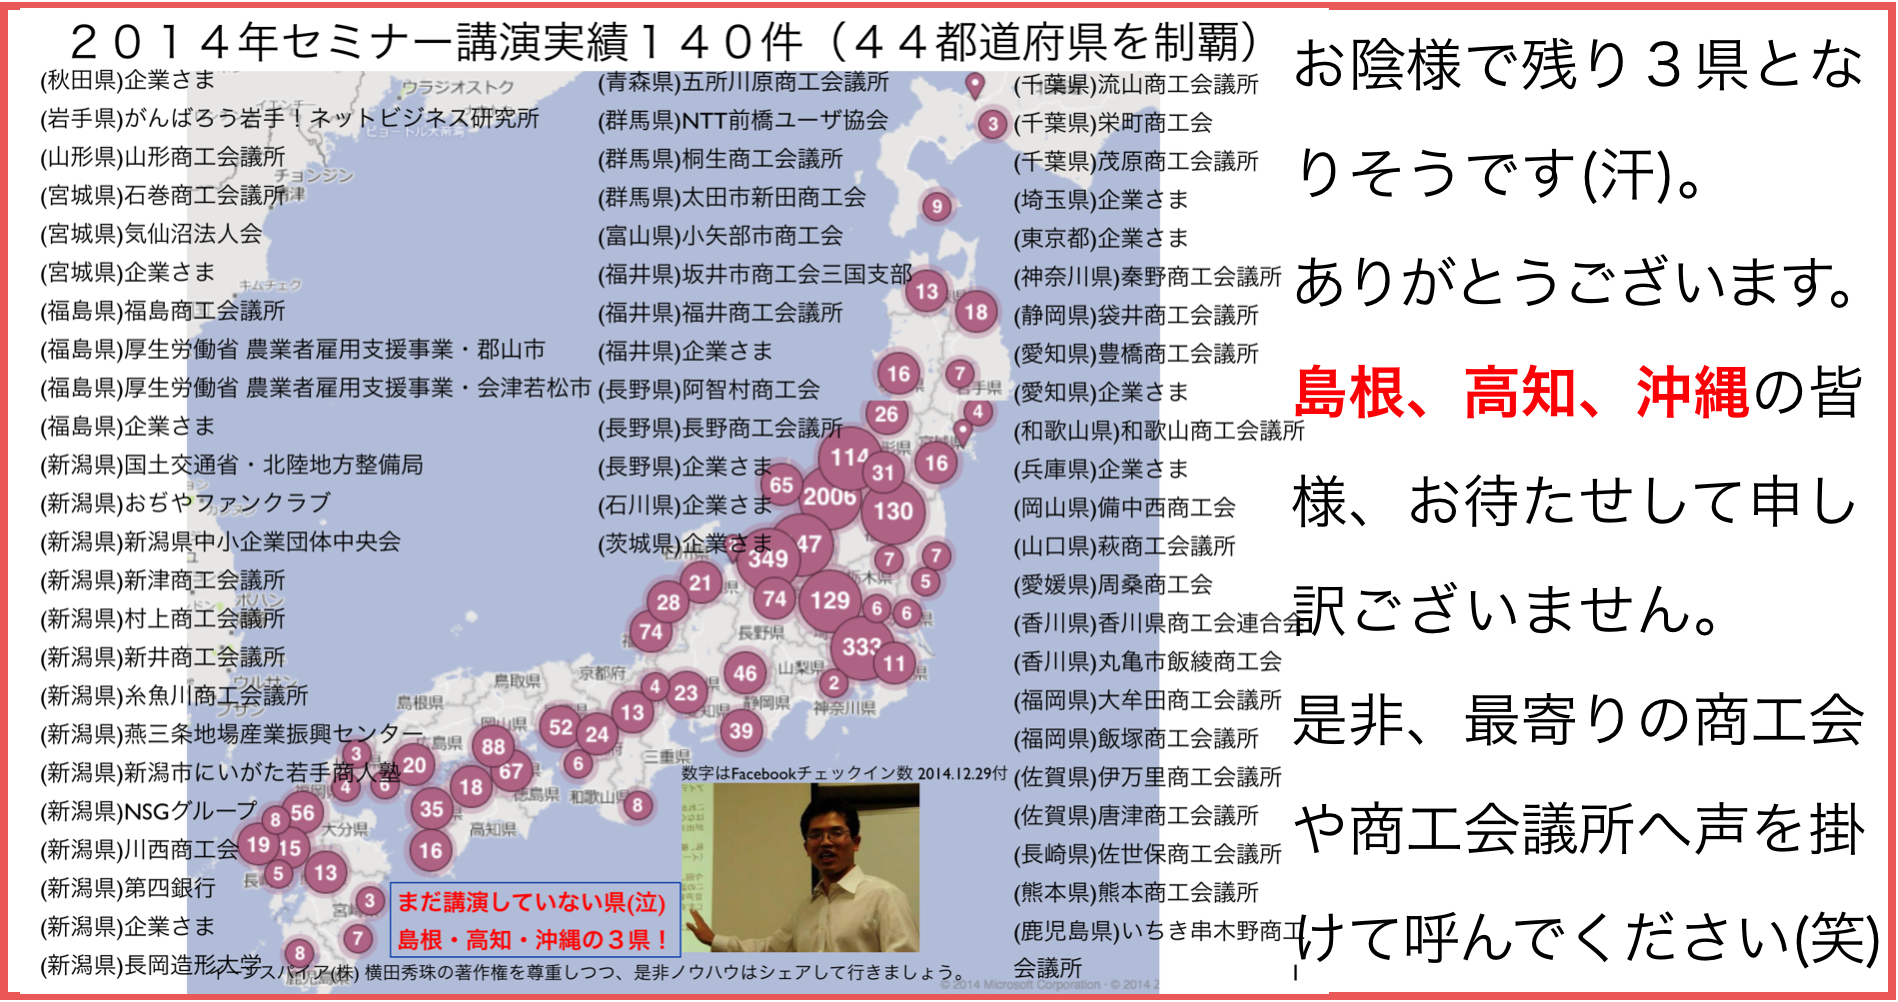 2015年7月以降の講演予定で注目セミナー(新潟県外も多数)